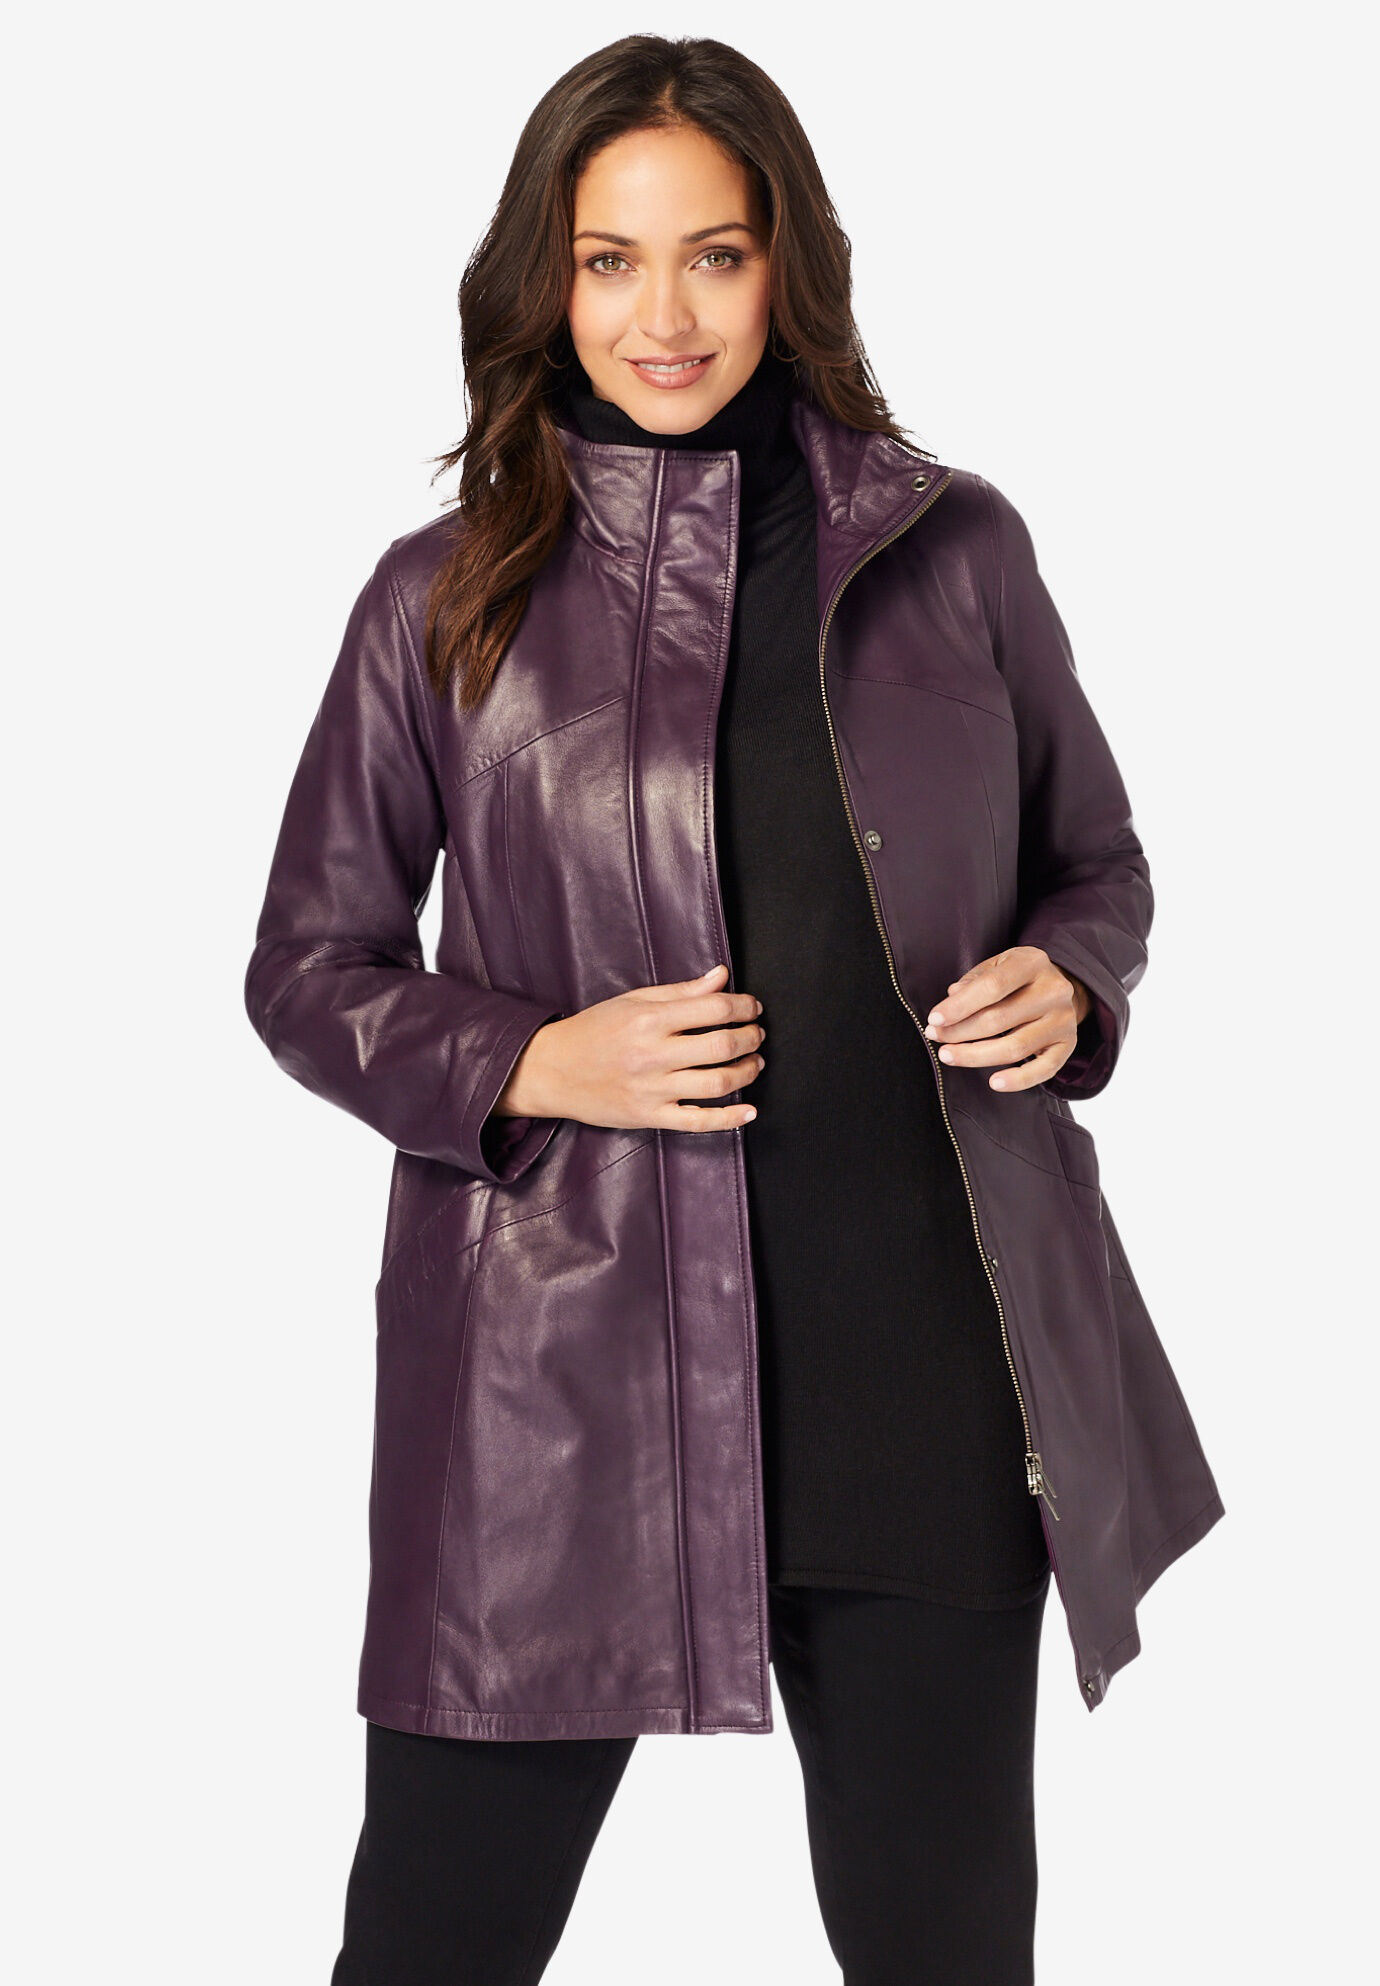 Roamans Womens Plus Size A-Line Leather Jacket 